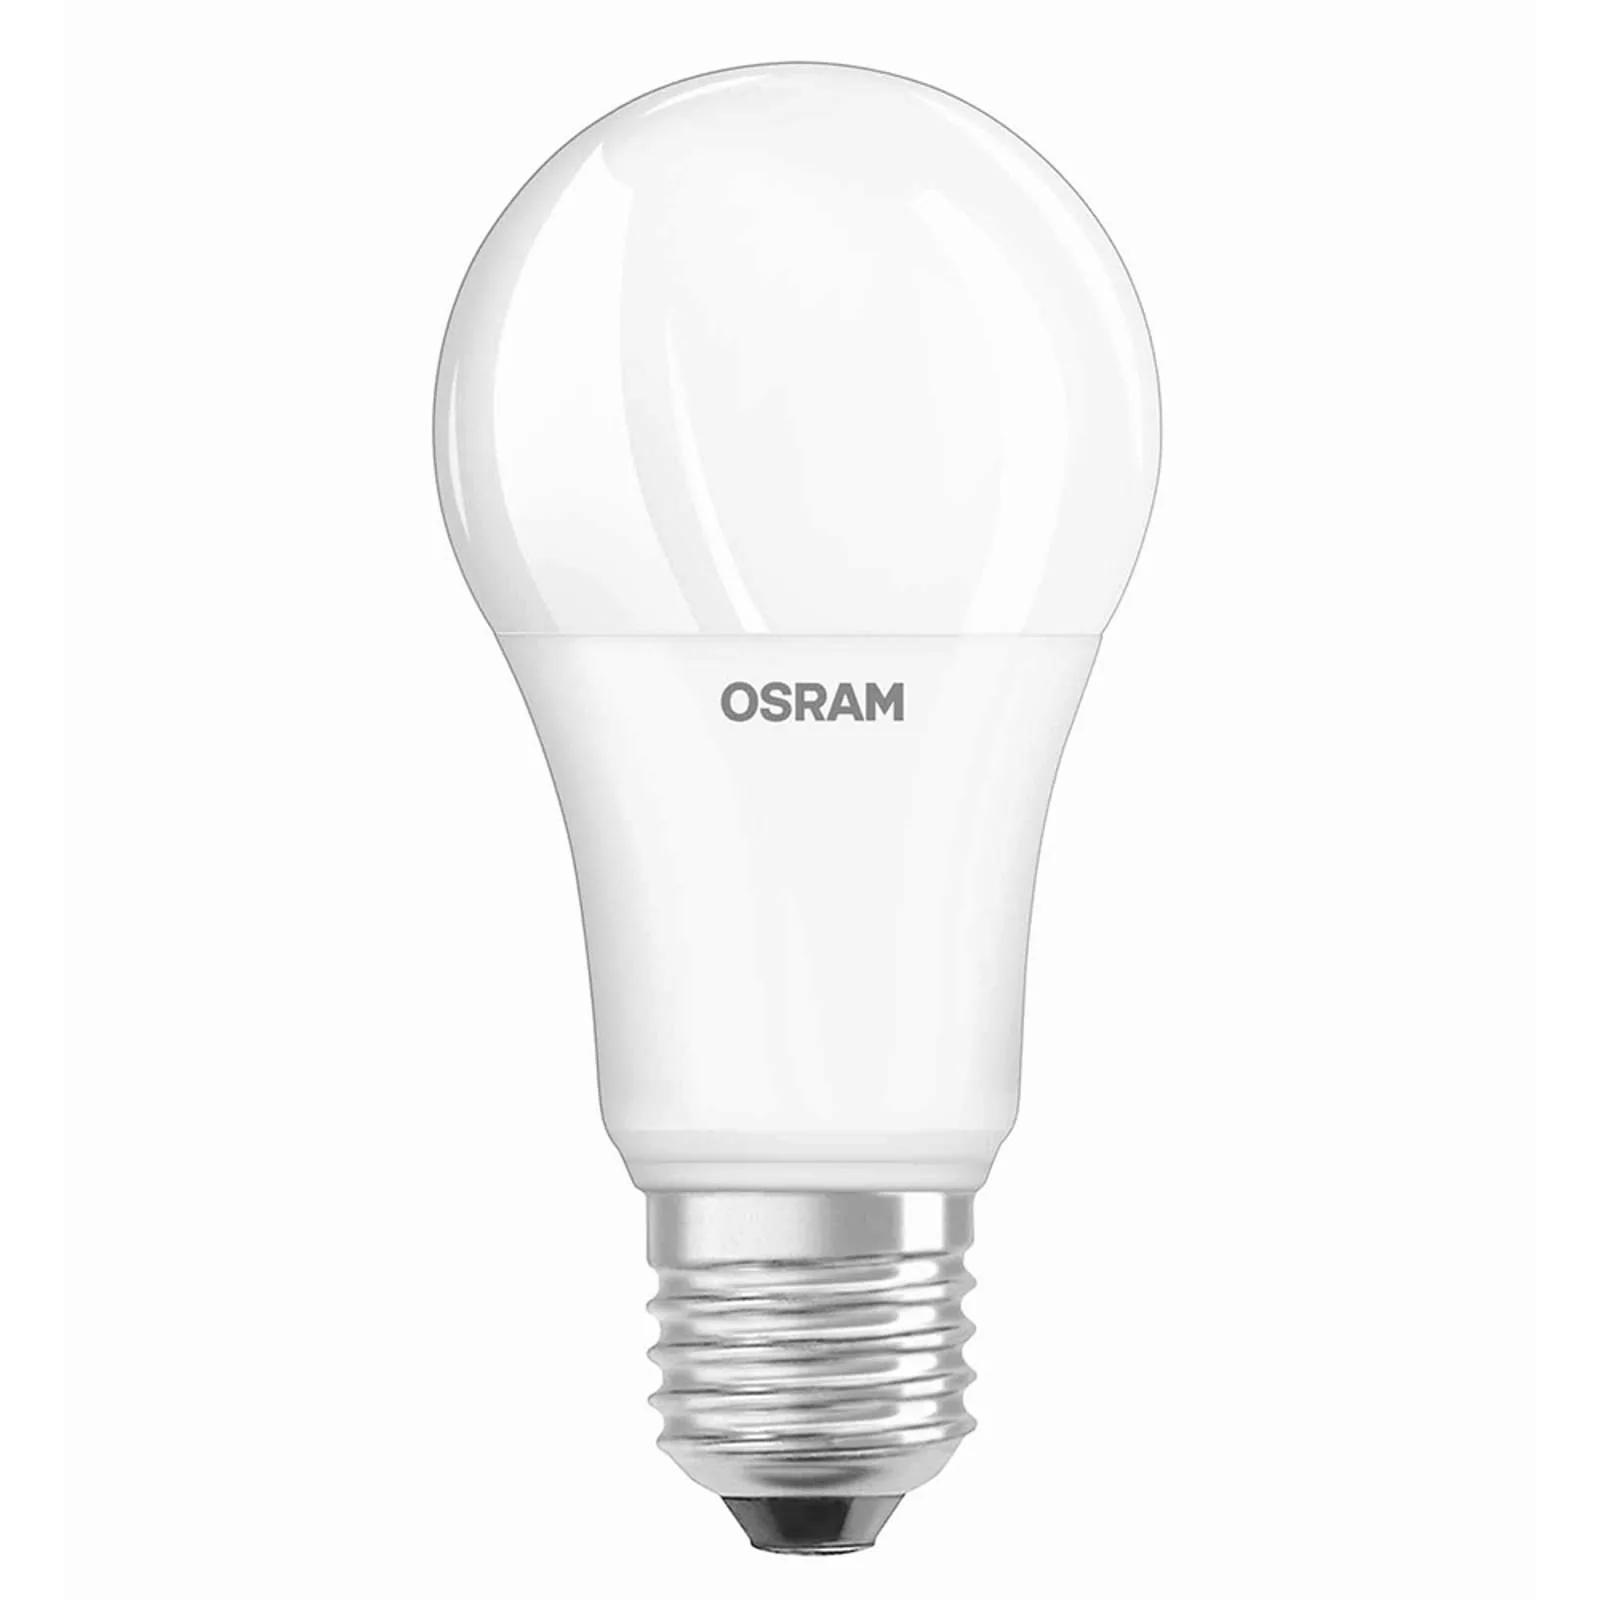 OSRAM LED-Lampe E27 14W 827 Superstar, dimmbar günstig online kaufen